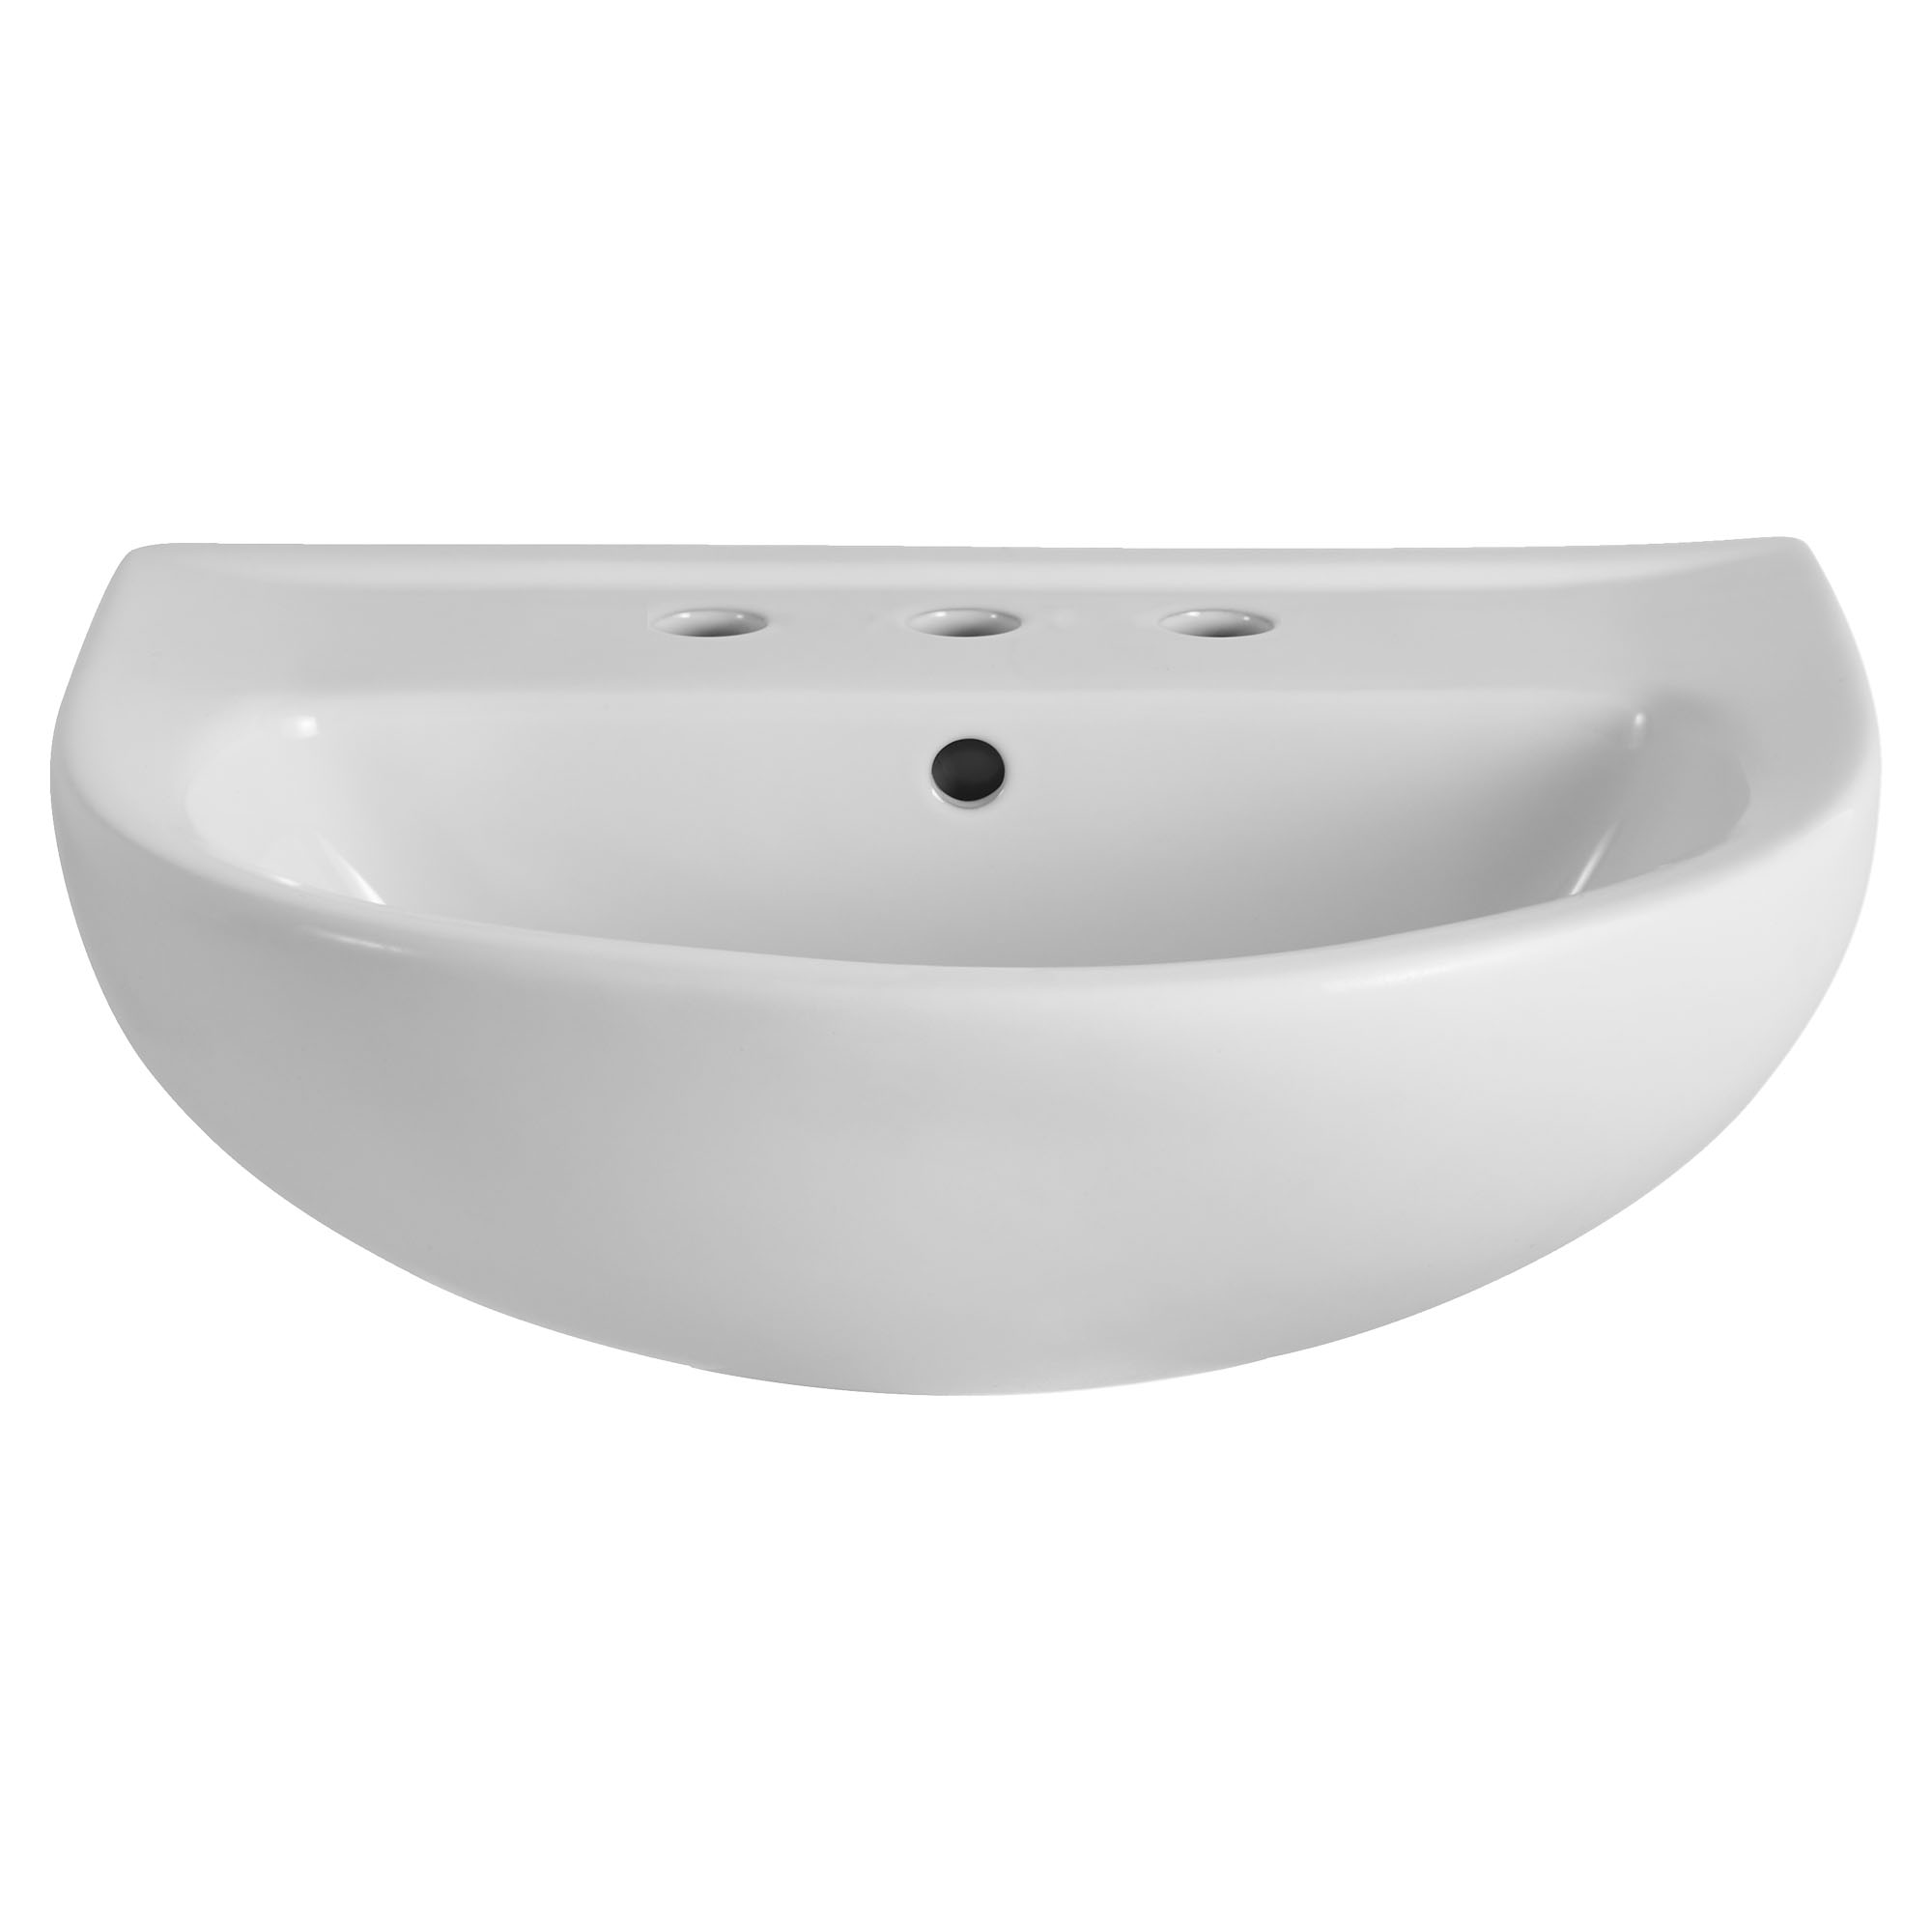 22-Inch Evolution® 8-Inch Widespread Pedestal Sink Top